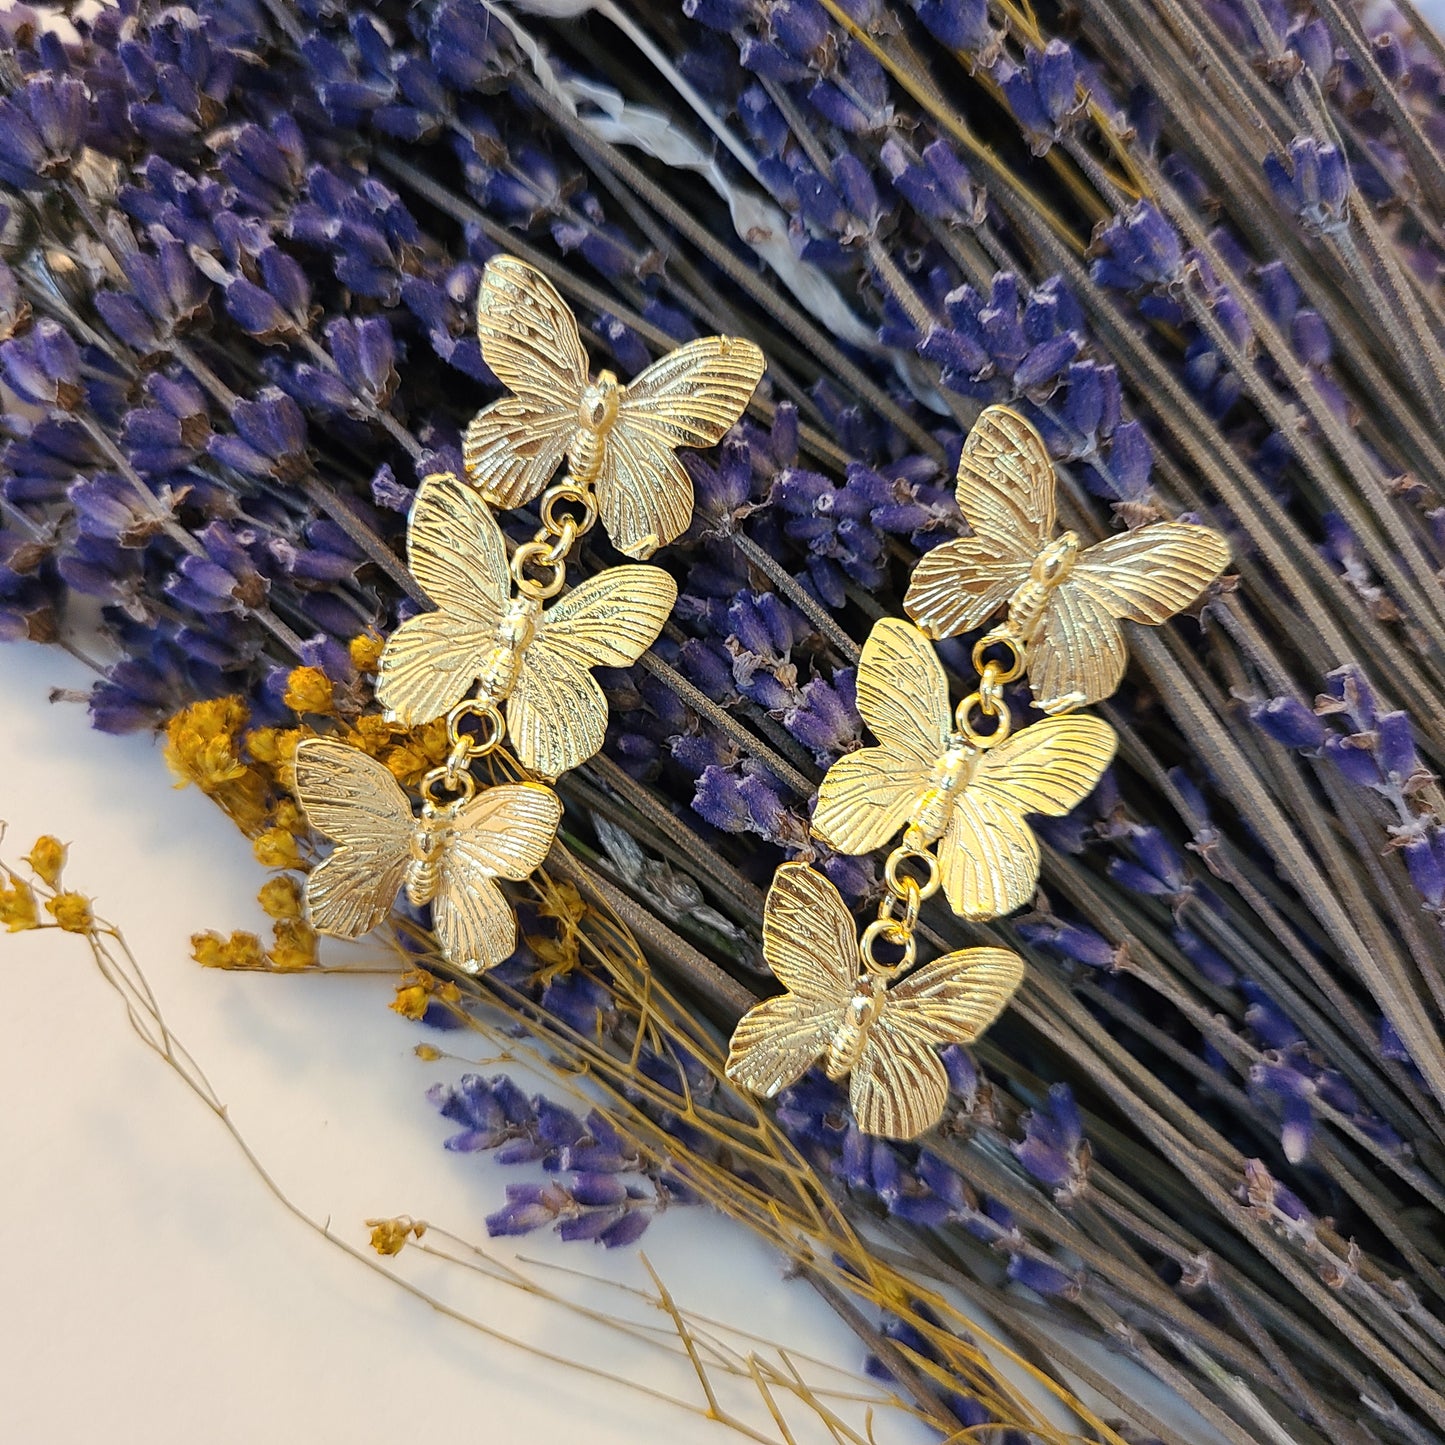 Three Butterfly earrings